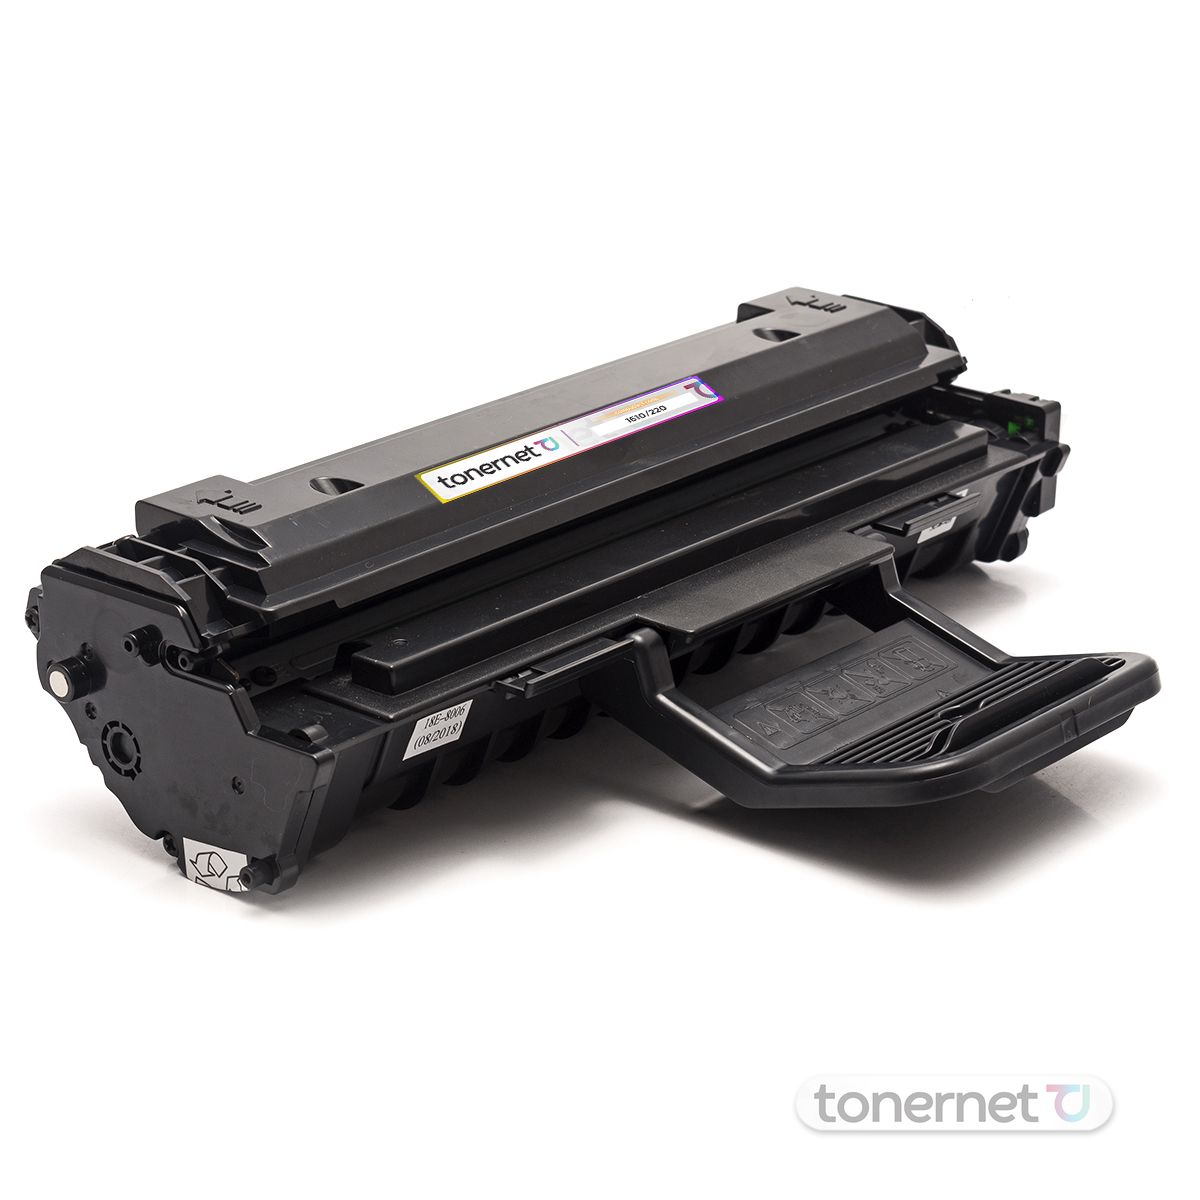 Toner Ml-1610 Pe220 Novo Compatível com Samsung Scx-4521 3124 3125 3117 com  CHIP - Cartuchos, Toners e Tintas para Impressão | Tonernet